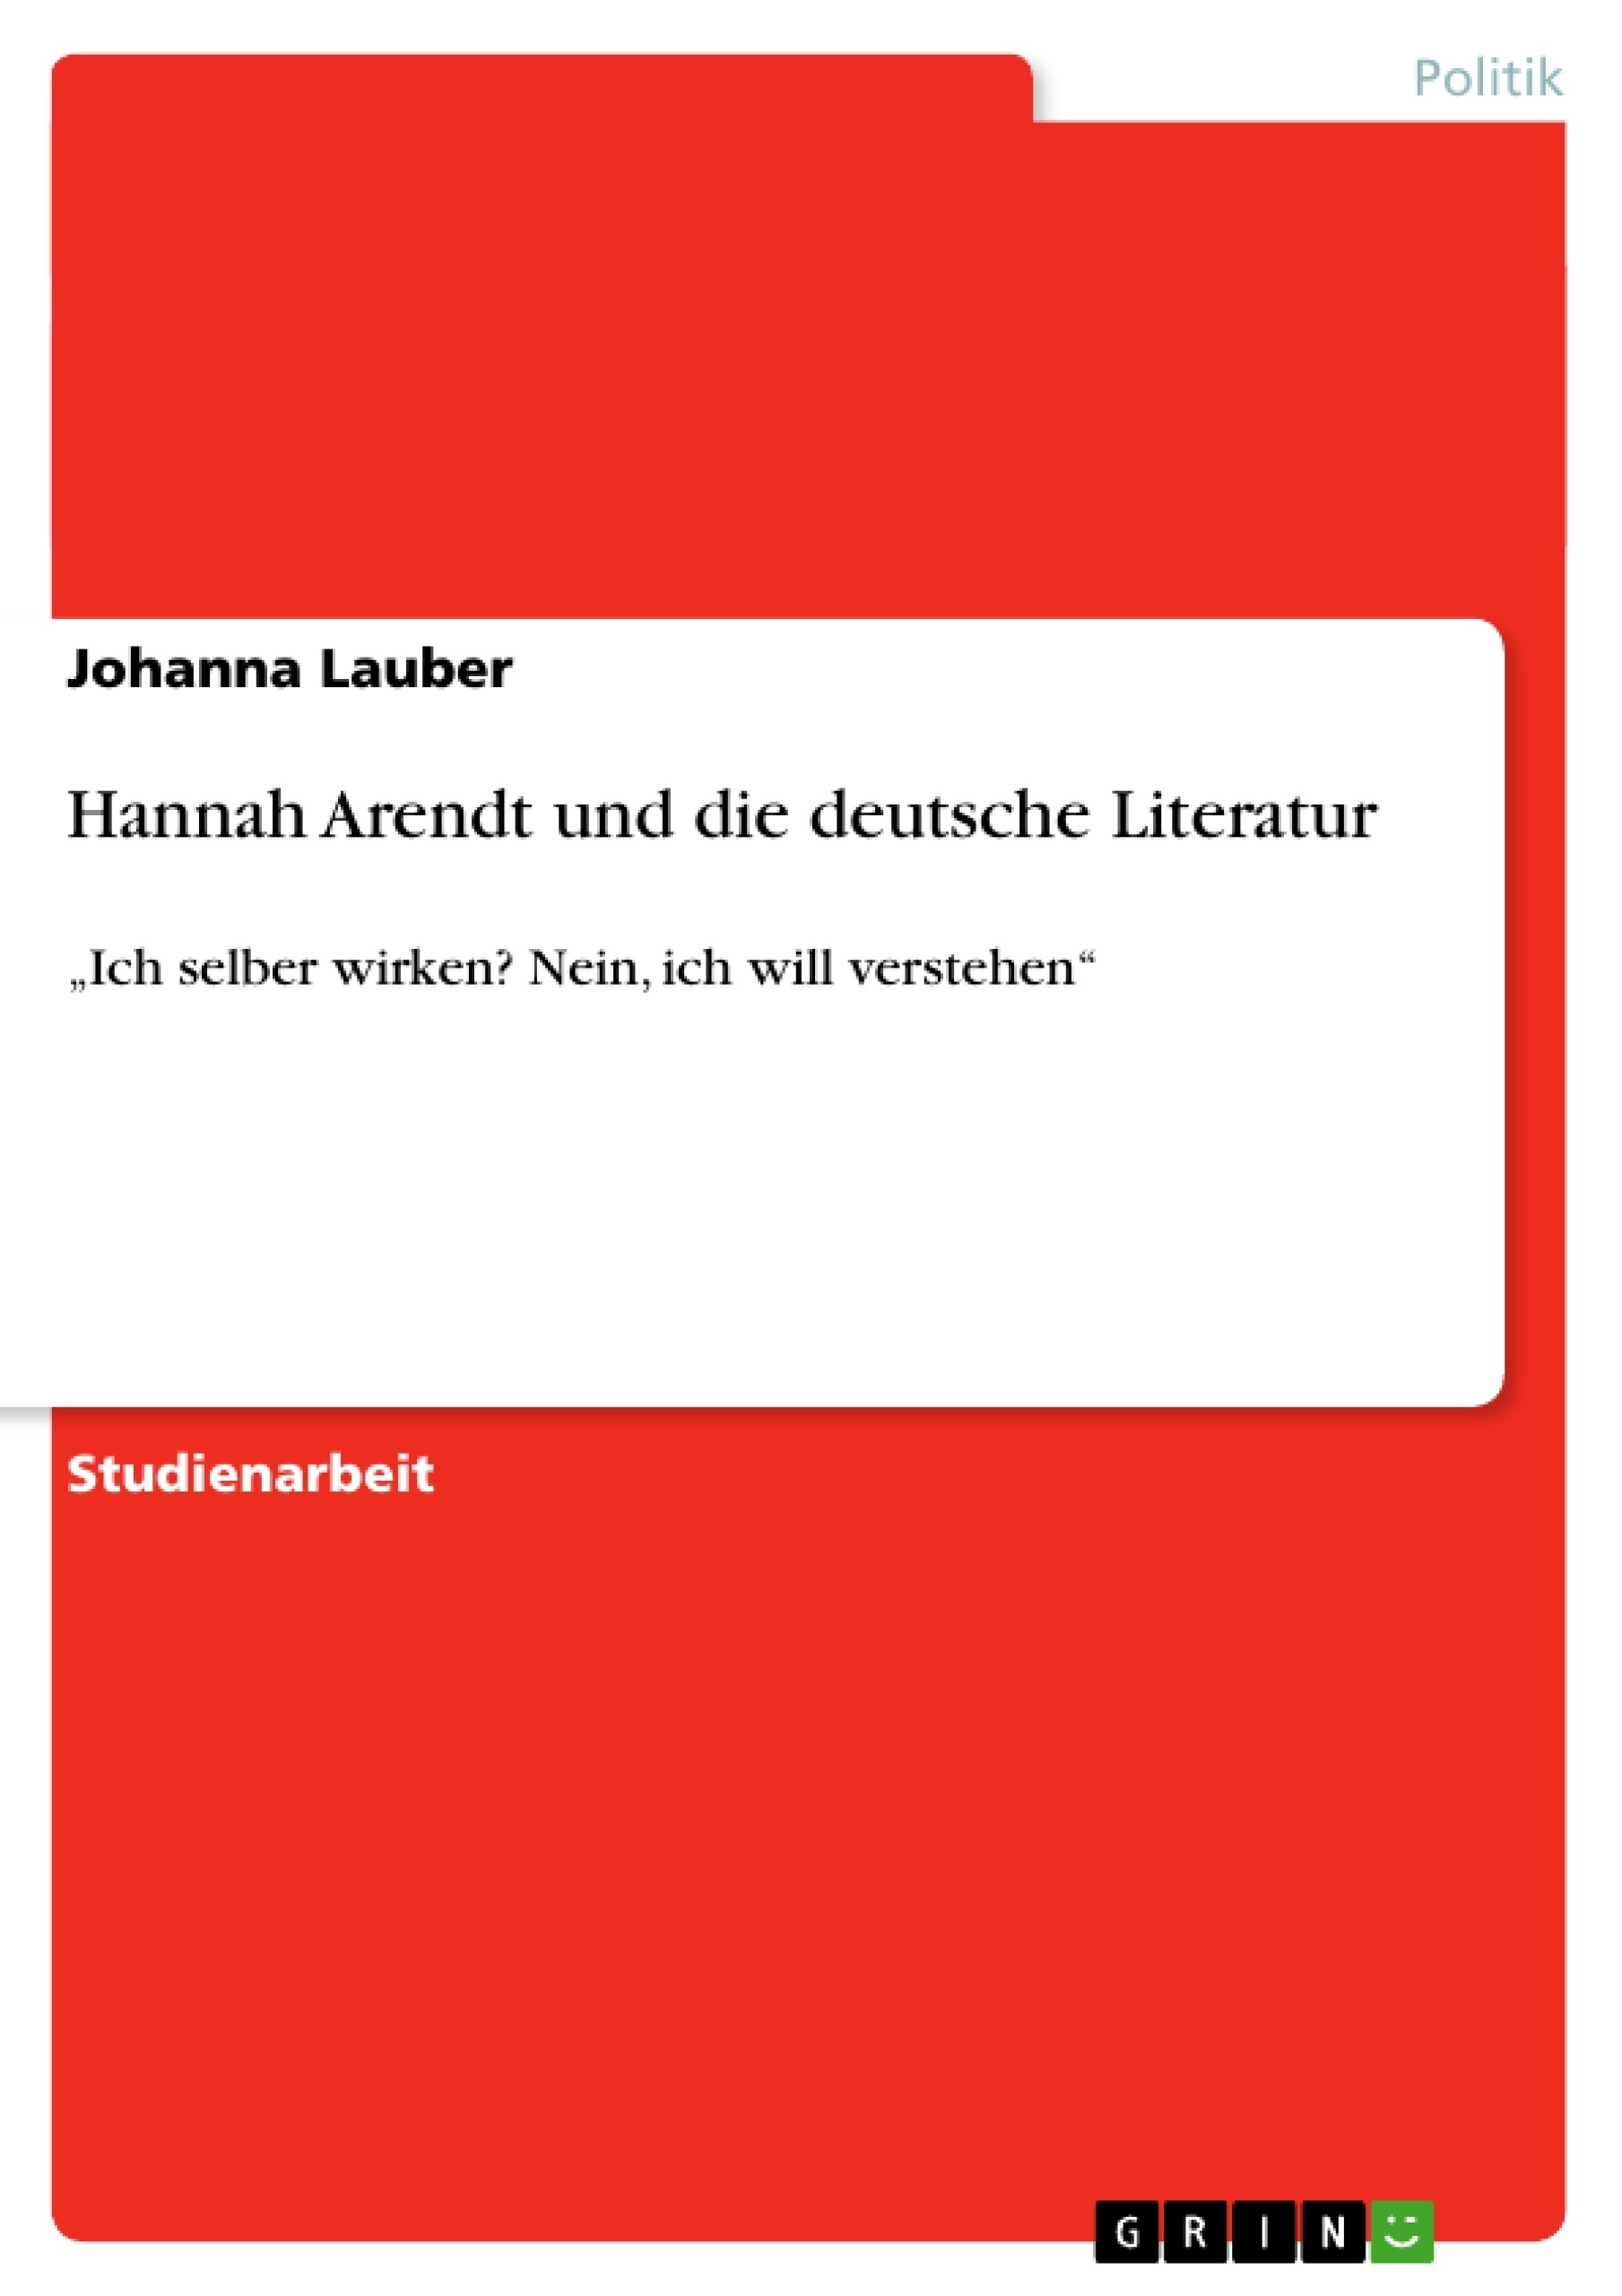 Título: Hannah Arendt und die deutsche Literatur